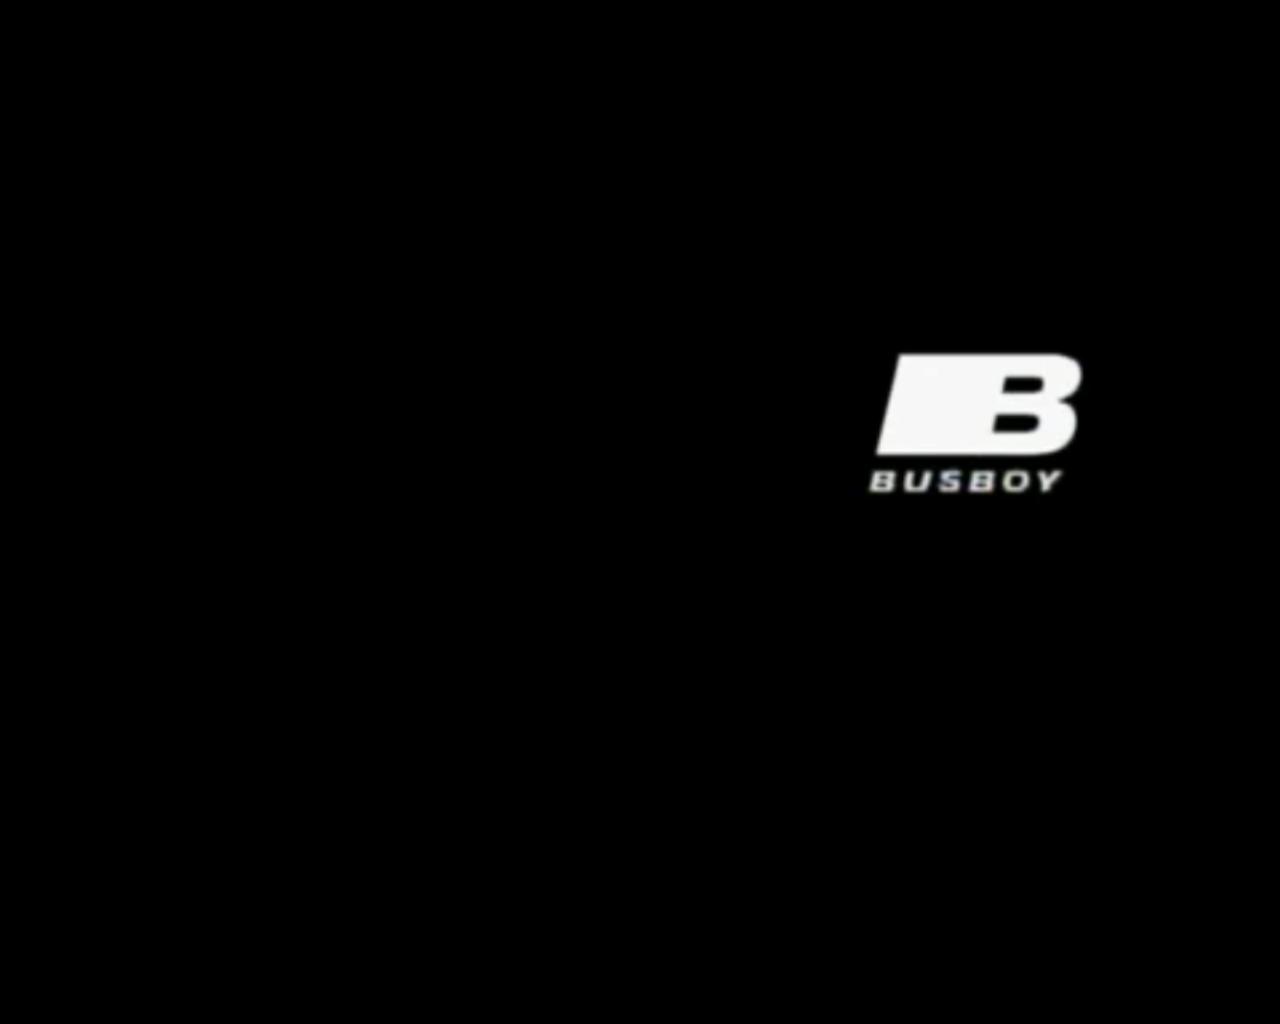 Busboy (2005)